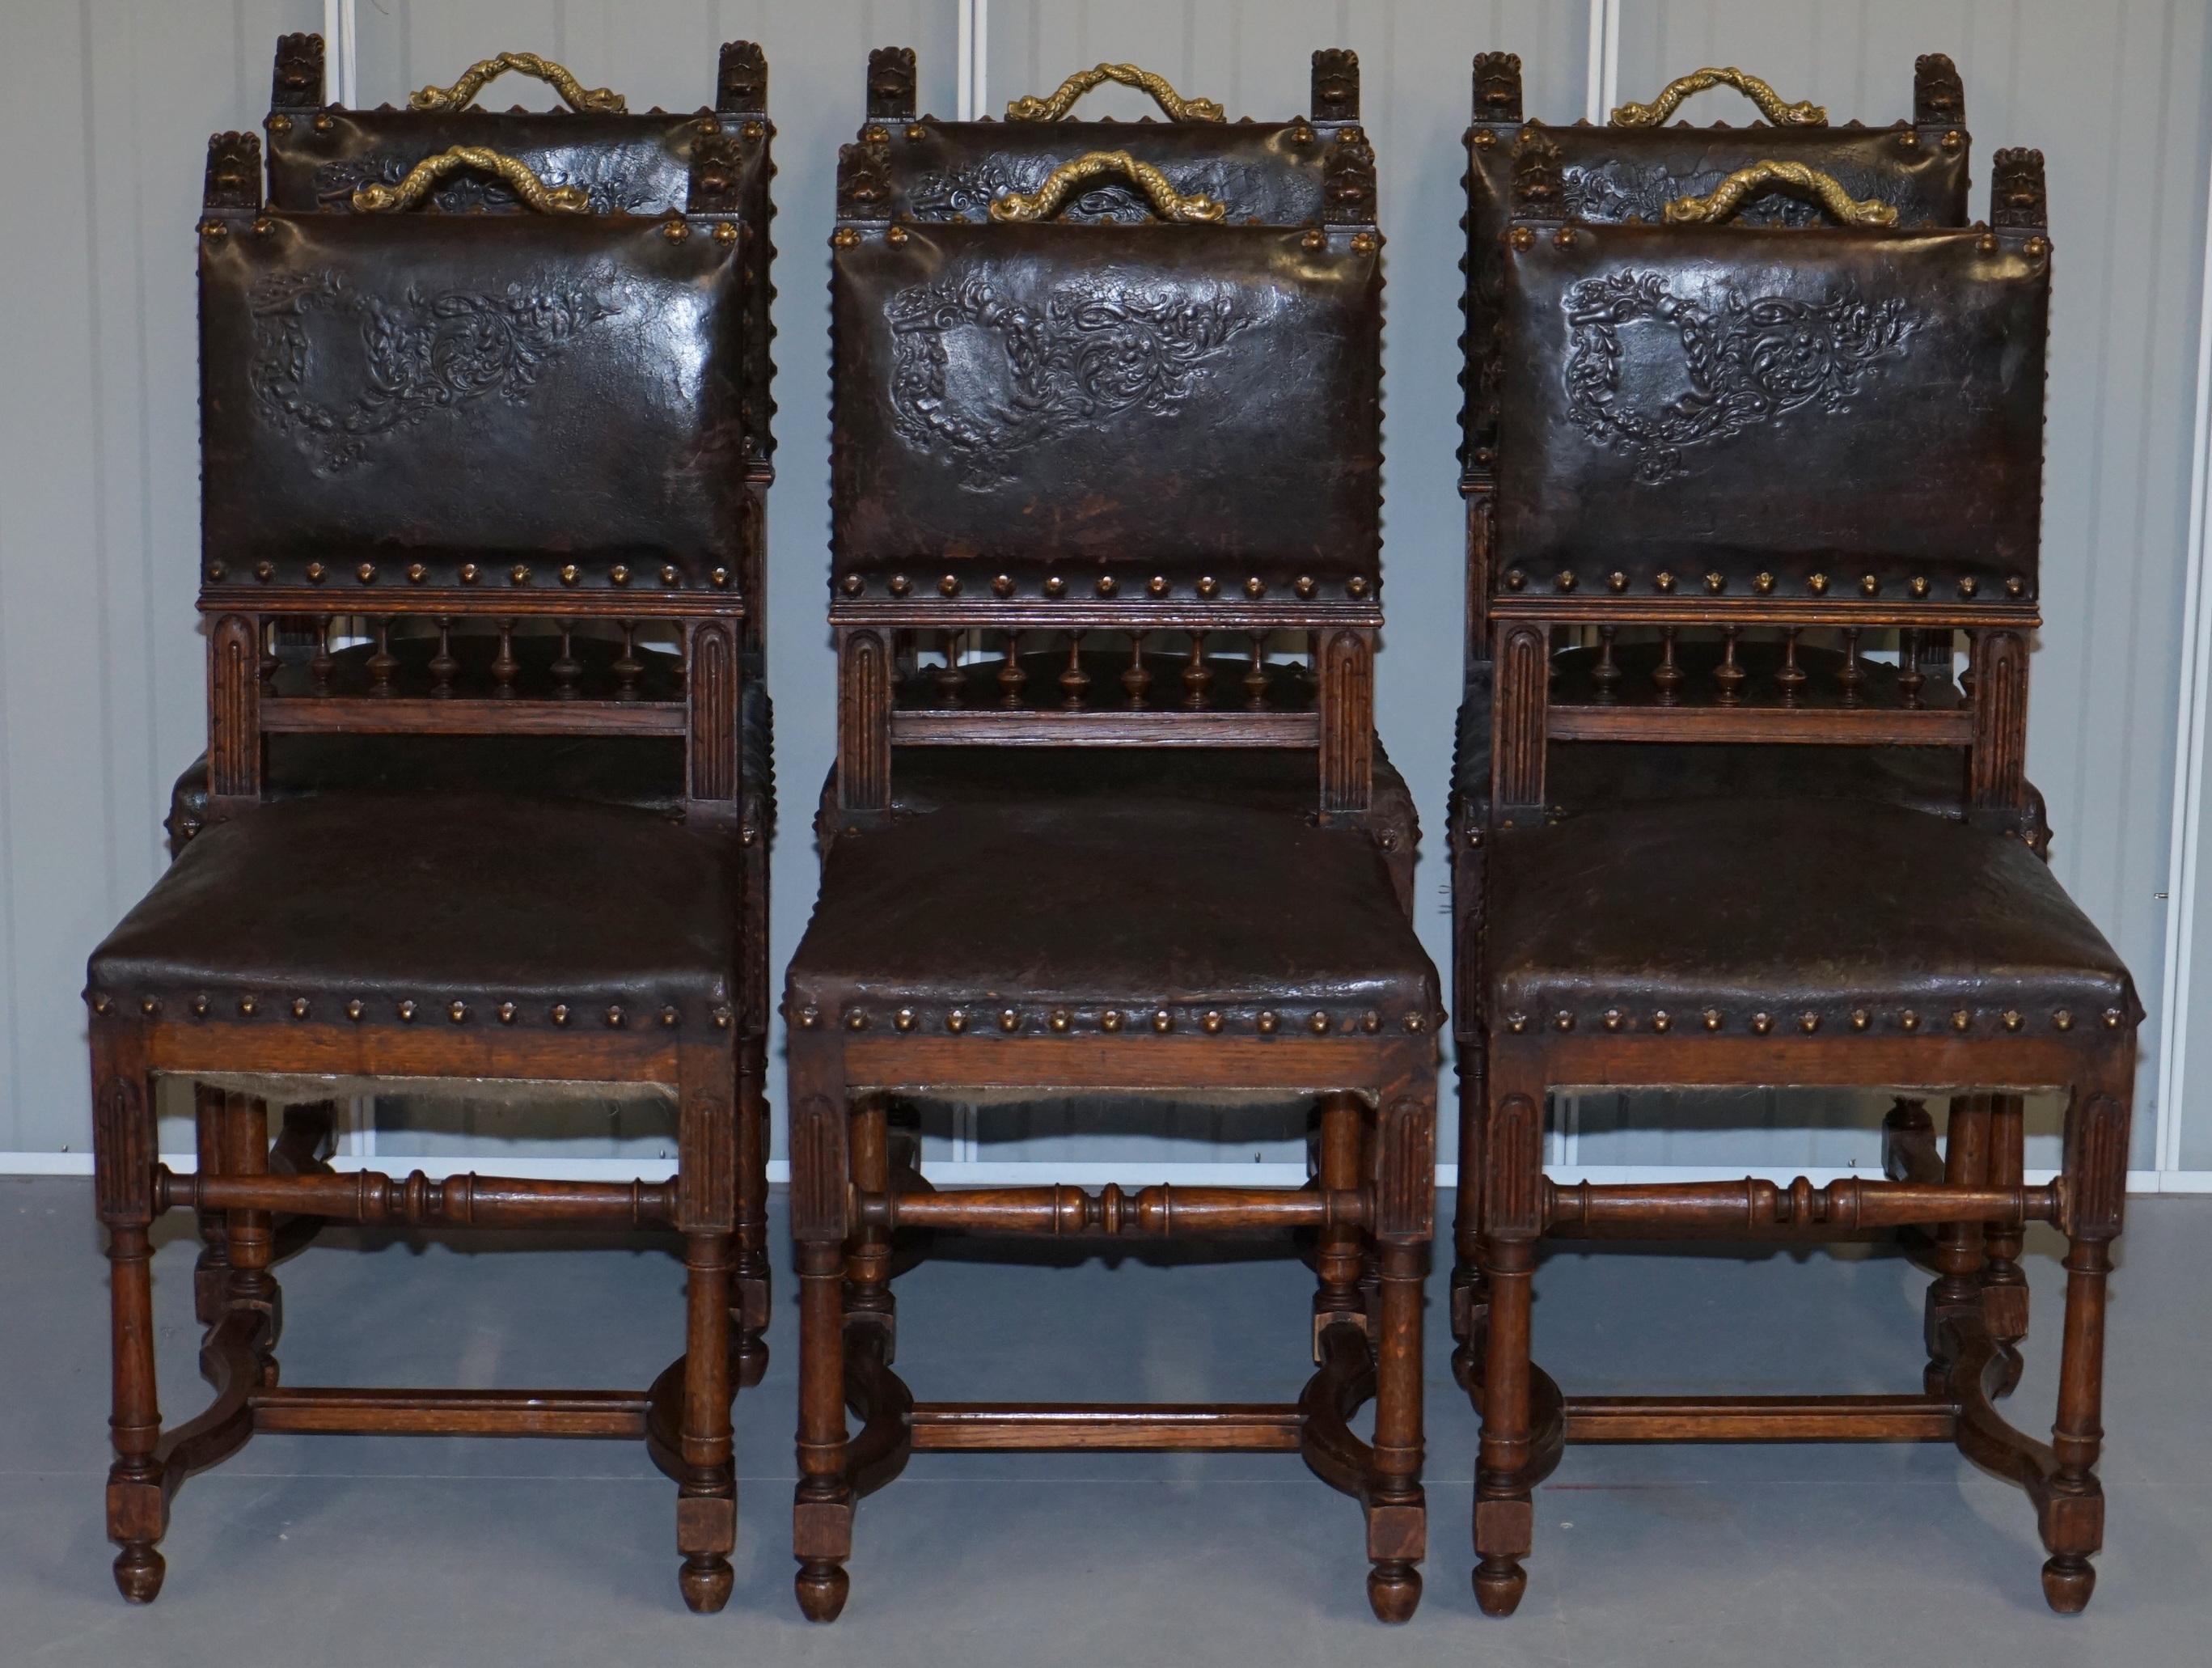 Nous sommes ravis d'offrir à la vente cet ensemble exceptionnel de six chaises de salle à manger Henry II circa 1880 en chêne français avec cuir gaufré marron pressé et poignées dauphines en bronze.

Un ensemble très rare et totalement original de